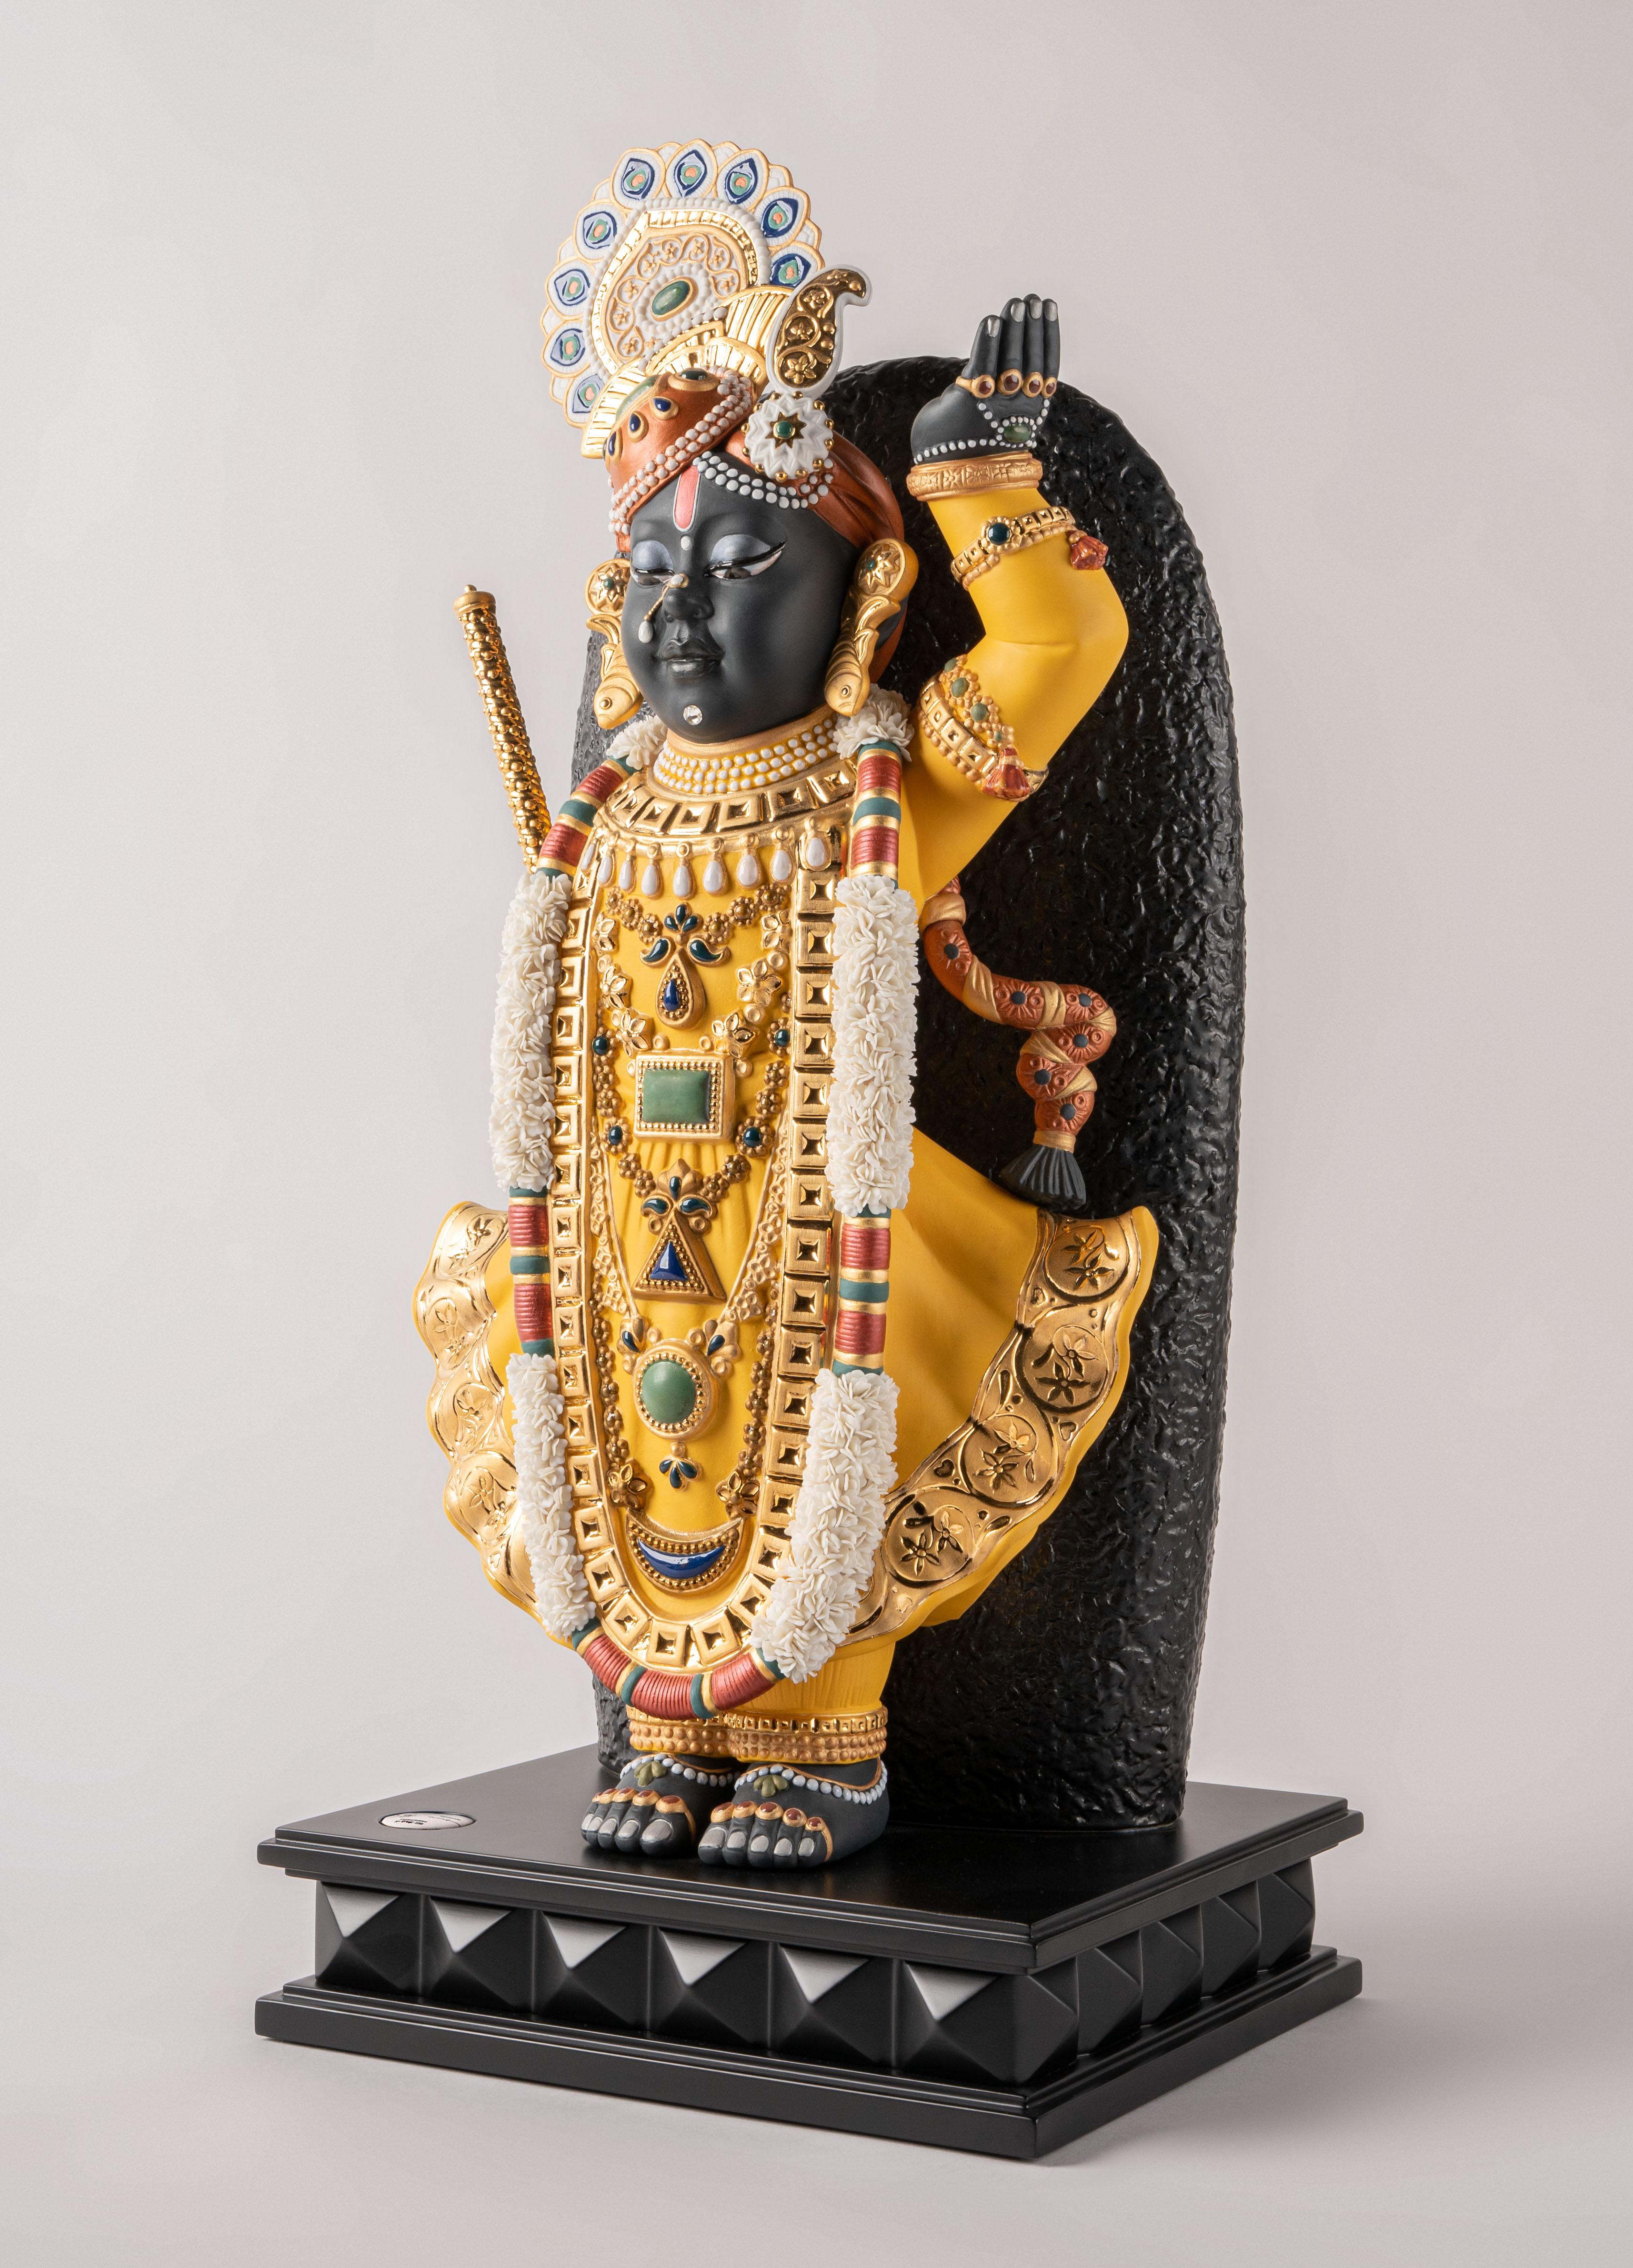 Porzellanskulptur mit der Darstellung von Shrinathji, einem der am meisten verehrten Götter Indiens. Shrinathji ist eine Manifestation von Krishna, einer der am meisten verehrten Gottheiten Indiens, verkörpert in einem siebenjährigen Jungen.